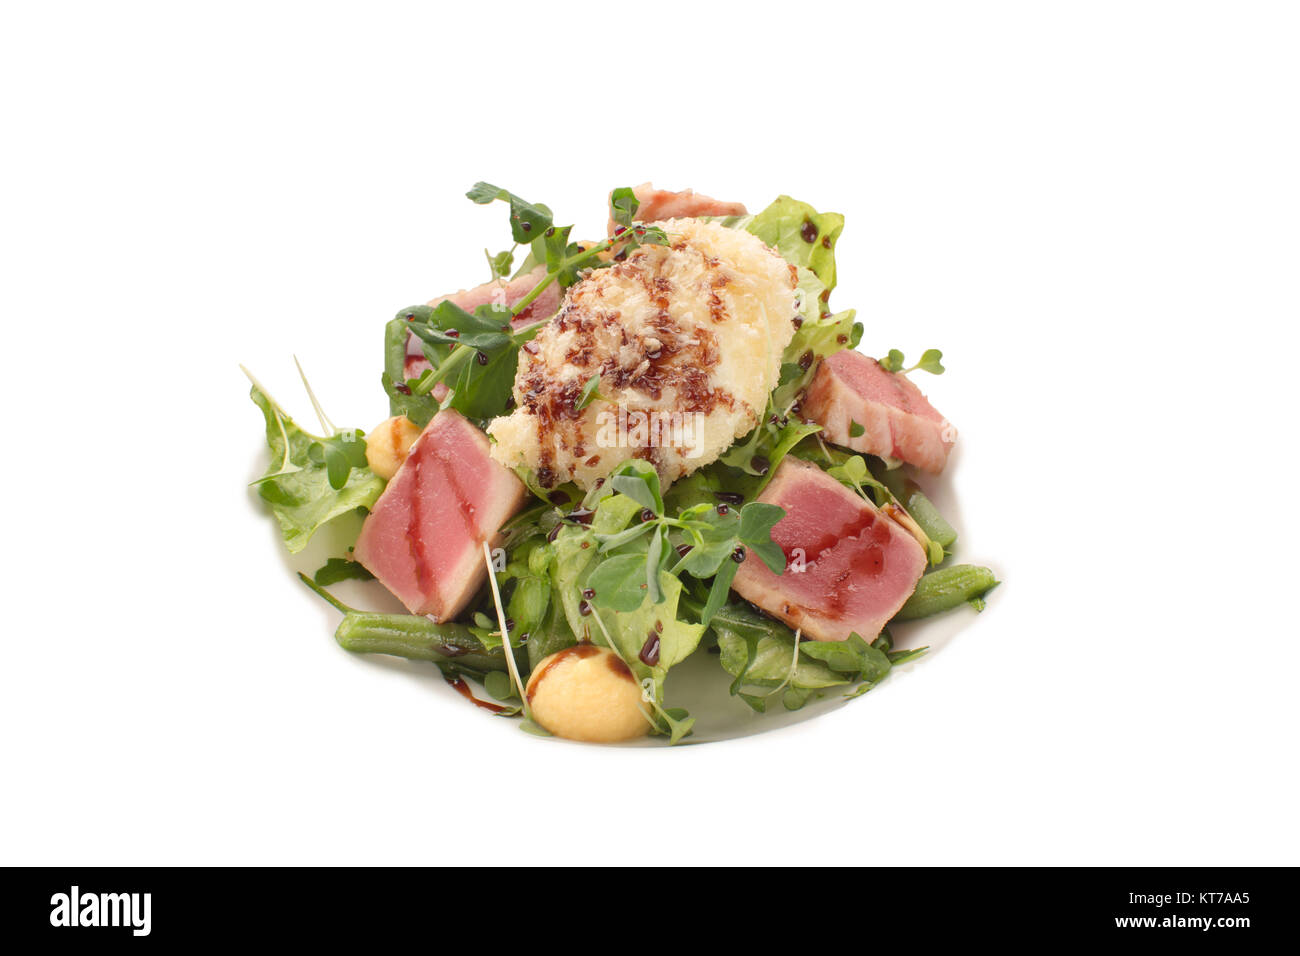 Una squisita insalata di tonno, verdi e fagioli verdi con aceto balsamico su un sfondo isolato Foto Stock